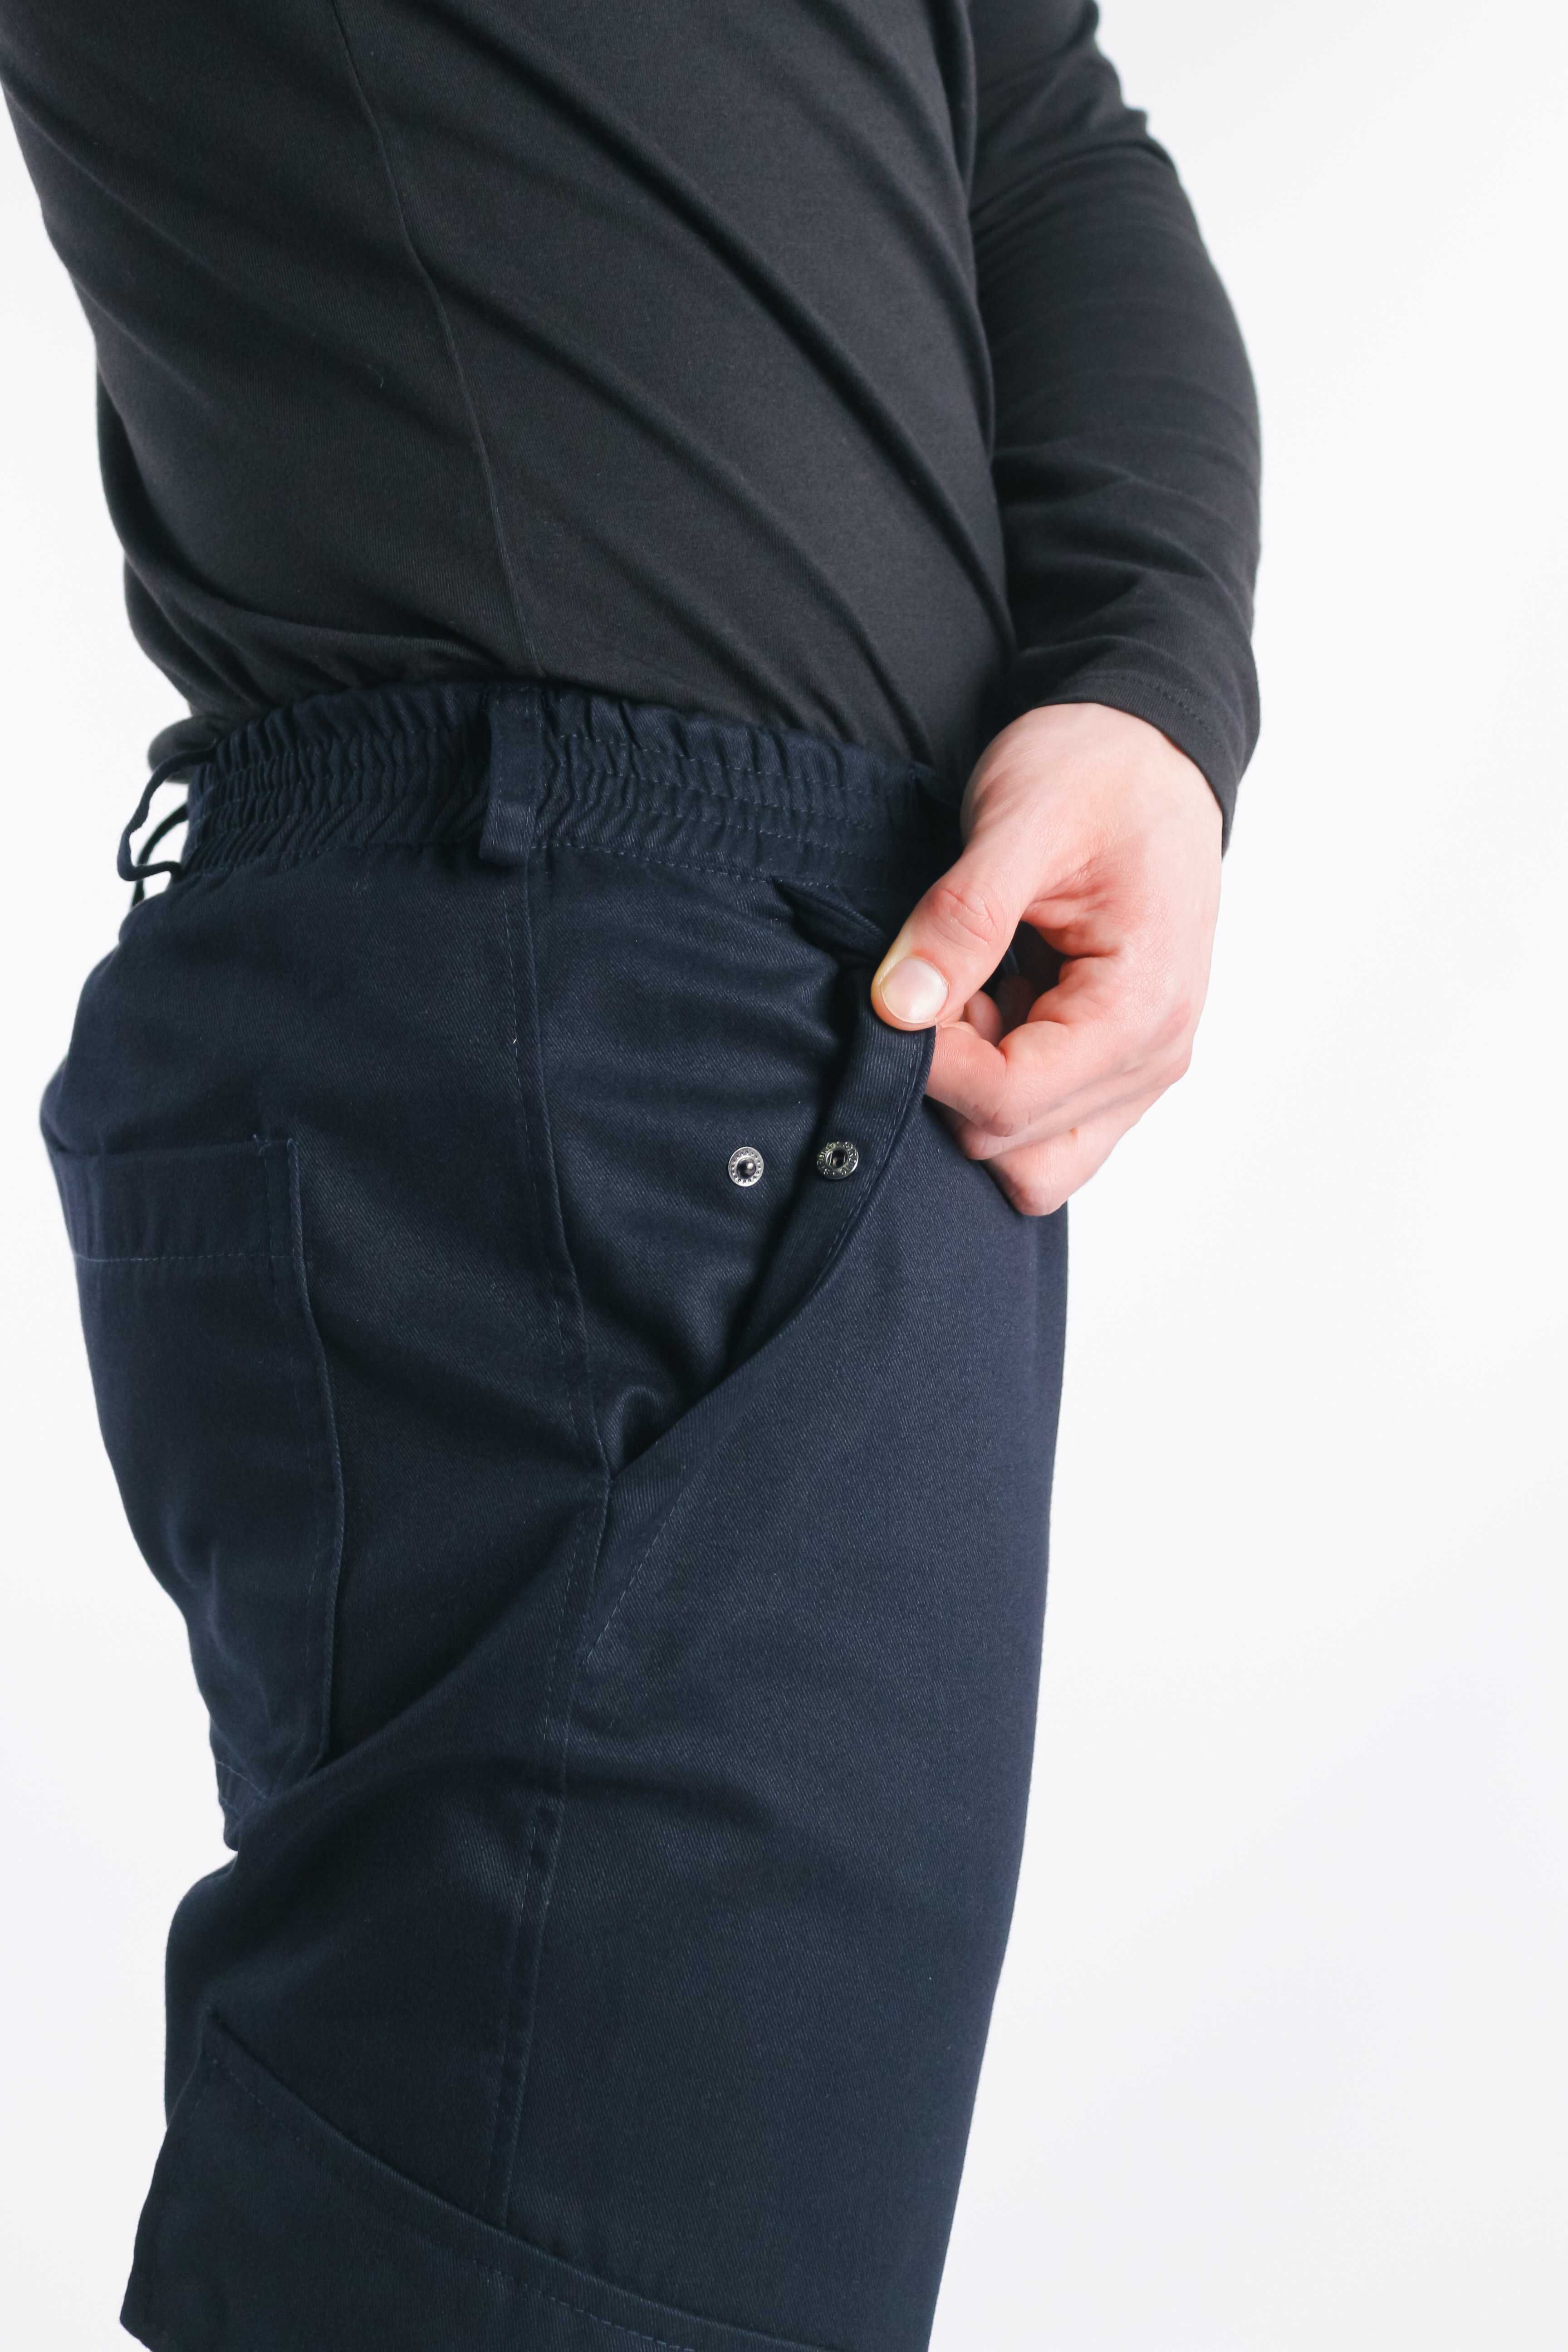 Брюки мужские котоновые штаны весенние темно-синие